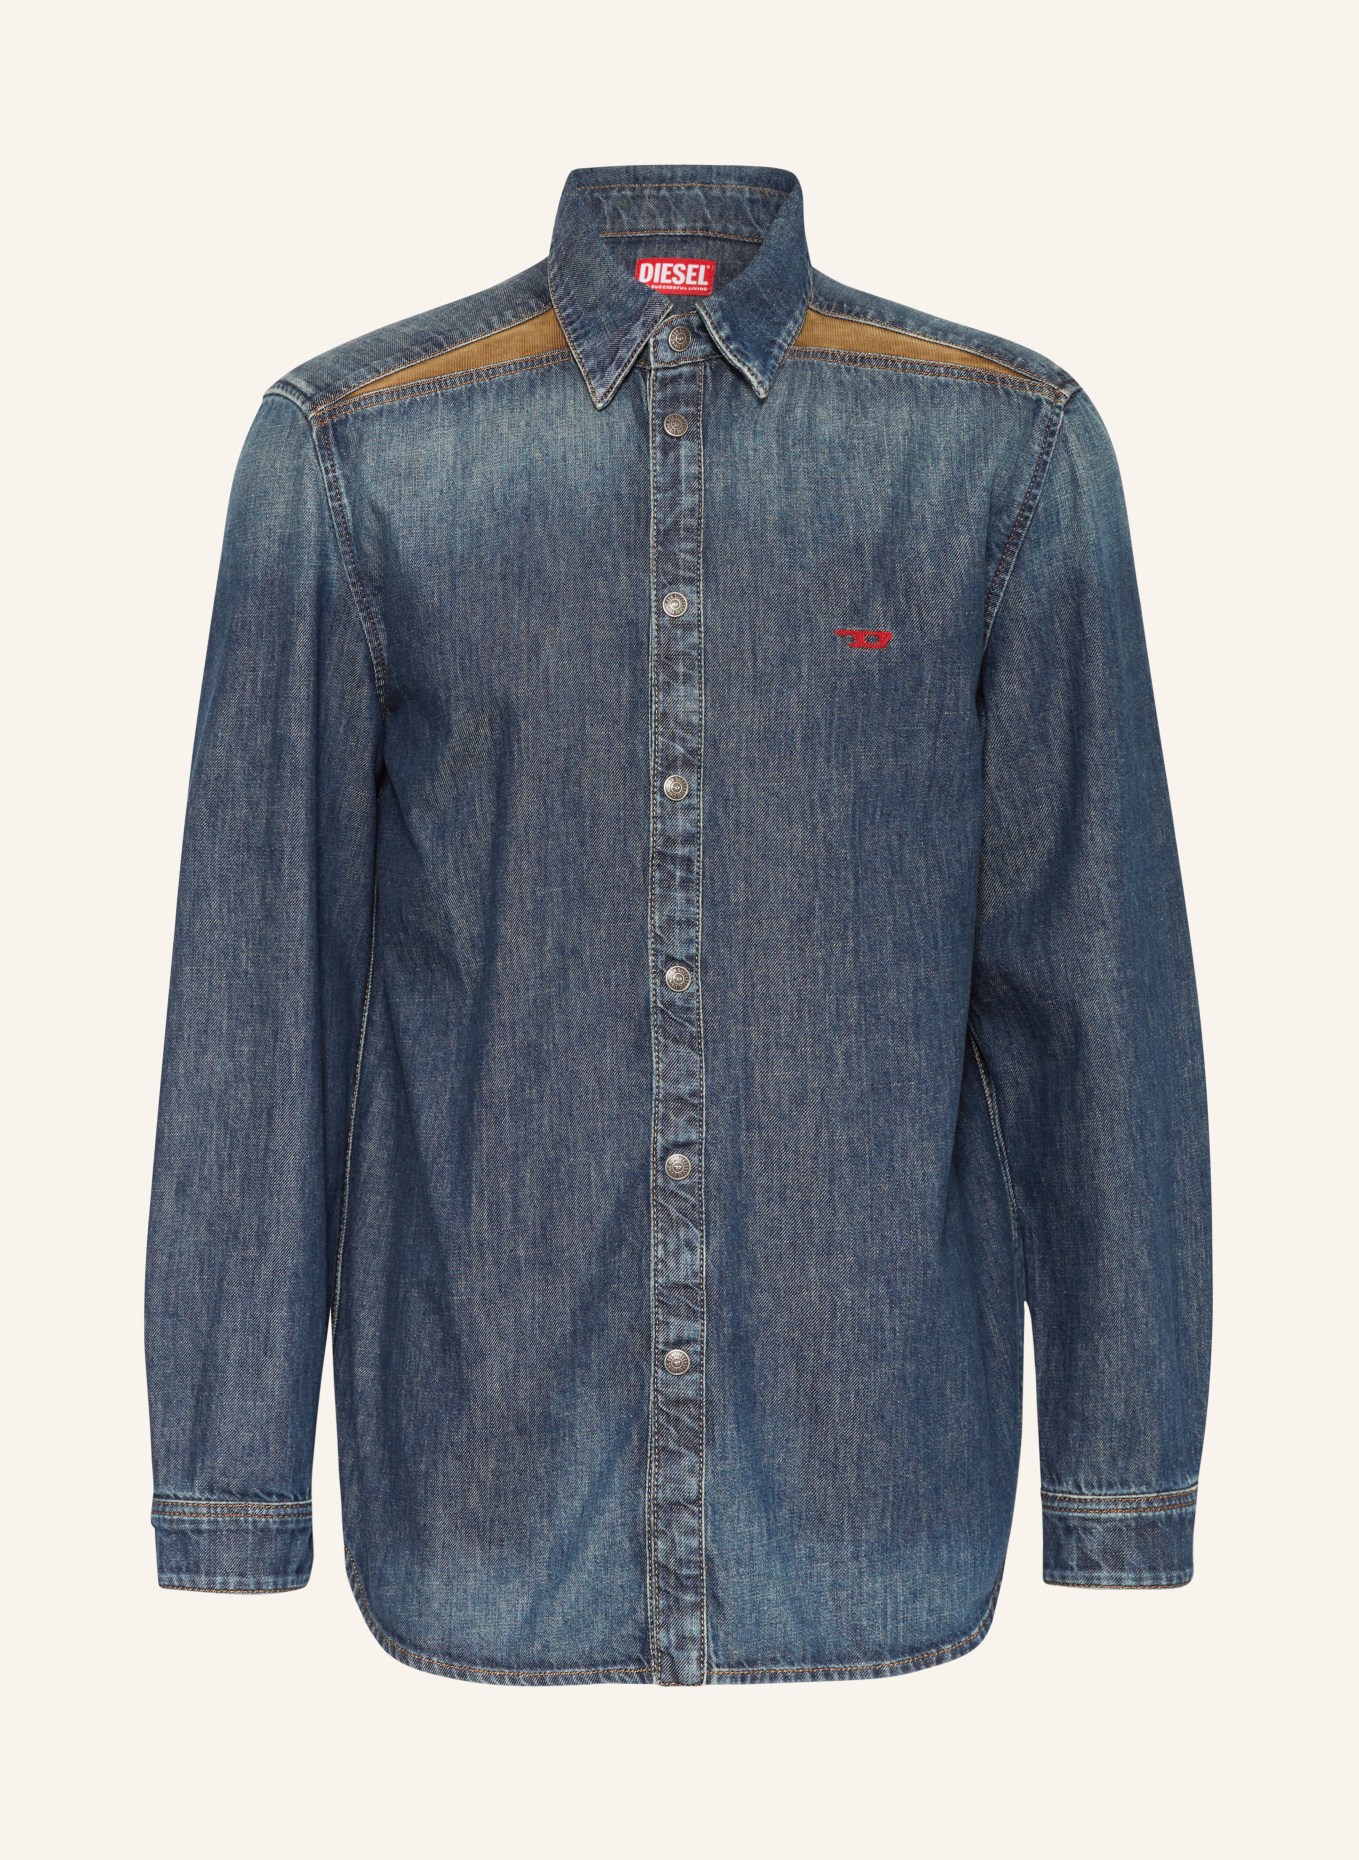 DIESEL Jeans-Overjacket, Farbe: BLAU (Bild 1)